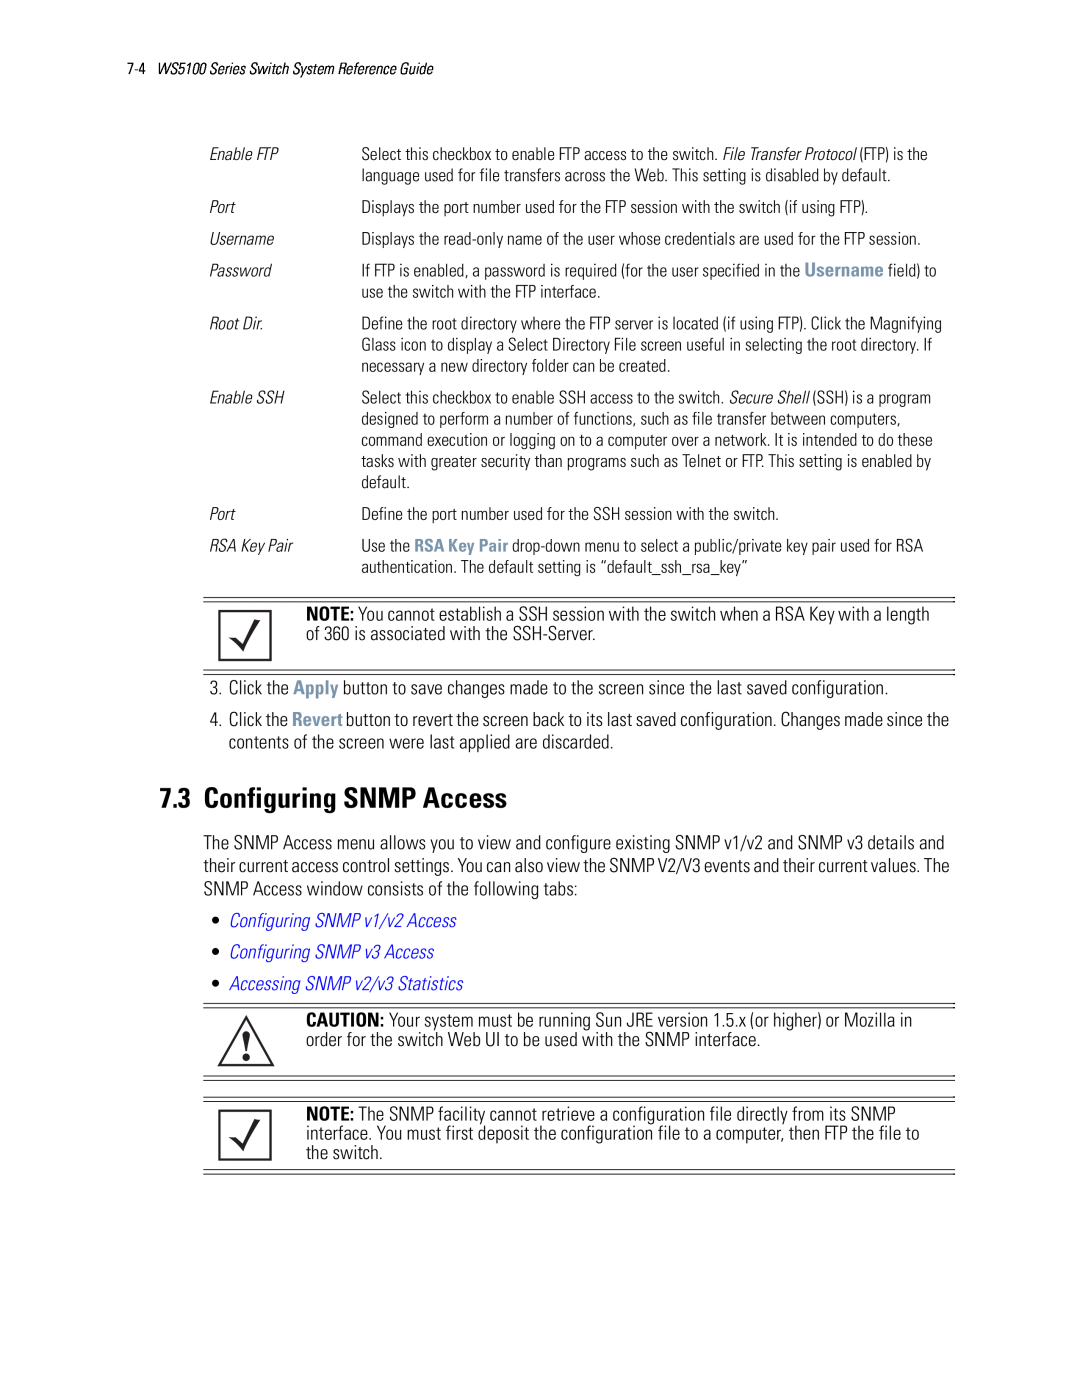 Motorola WS5100 manual 7.3Configuring SNMP Access, •Configuring SNMP v1/v2 Access, •Configuring SNMP v3 Access 